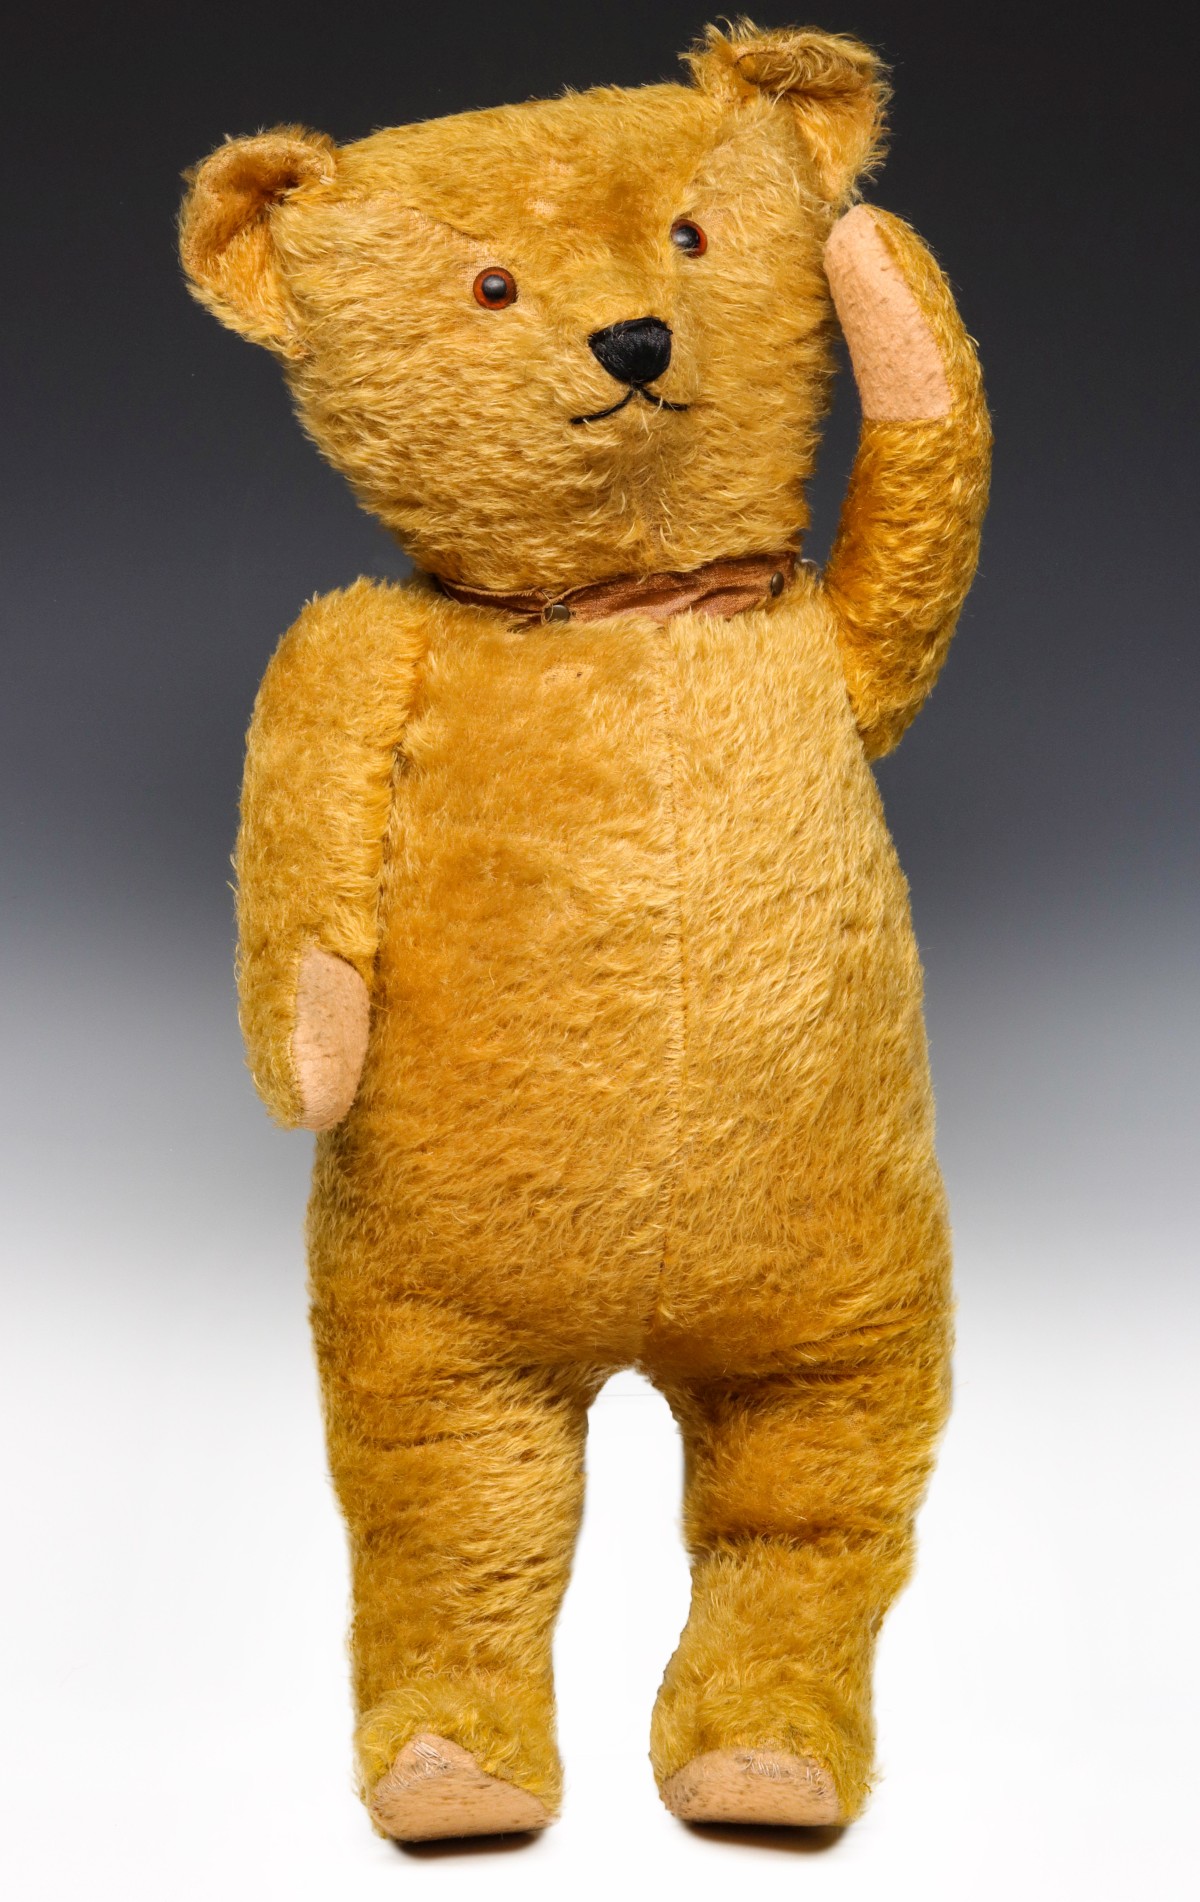 AN ANTIQUE 24-INCH GOLD MOHAIR STANDING TEDDY BEAR